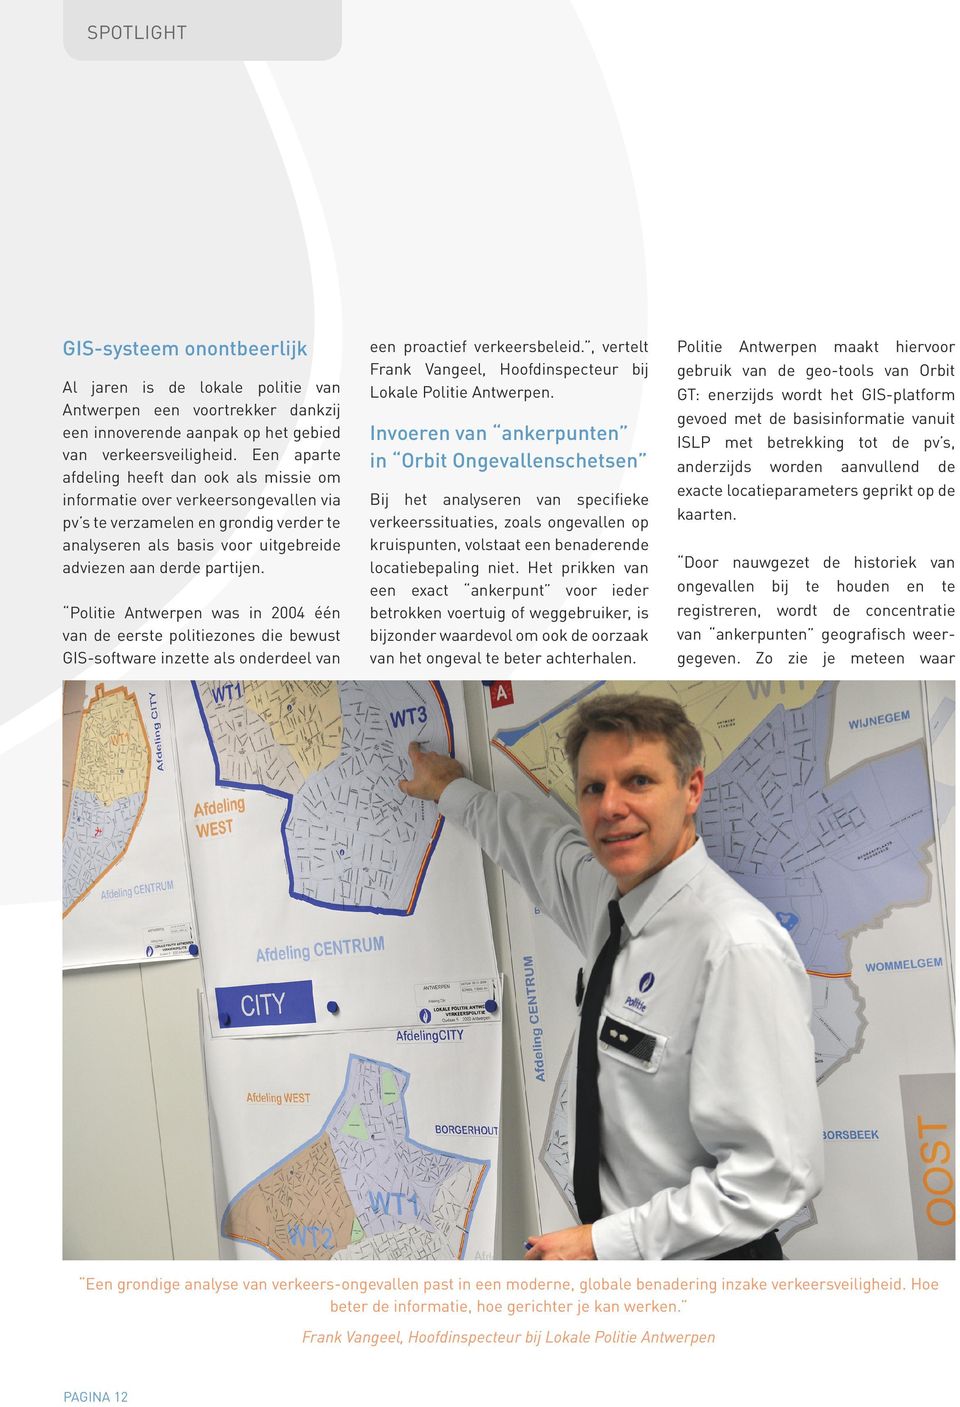 Politie Antwerpen was in 2004 één van de eerste politiezones die bewust GIS-software inzette als onderdeel van een proactief verkeersbeleid.